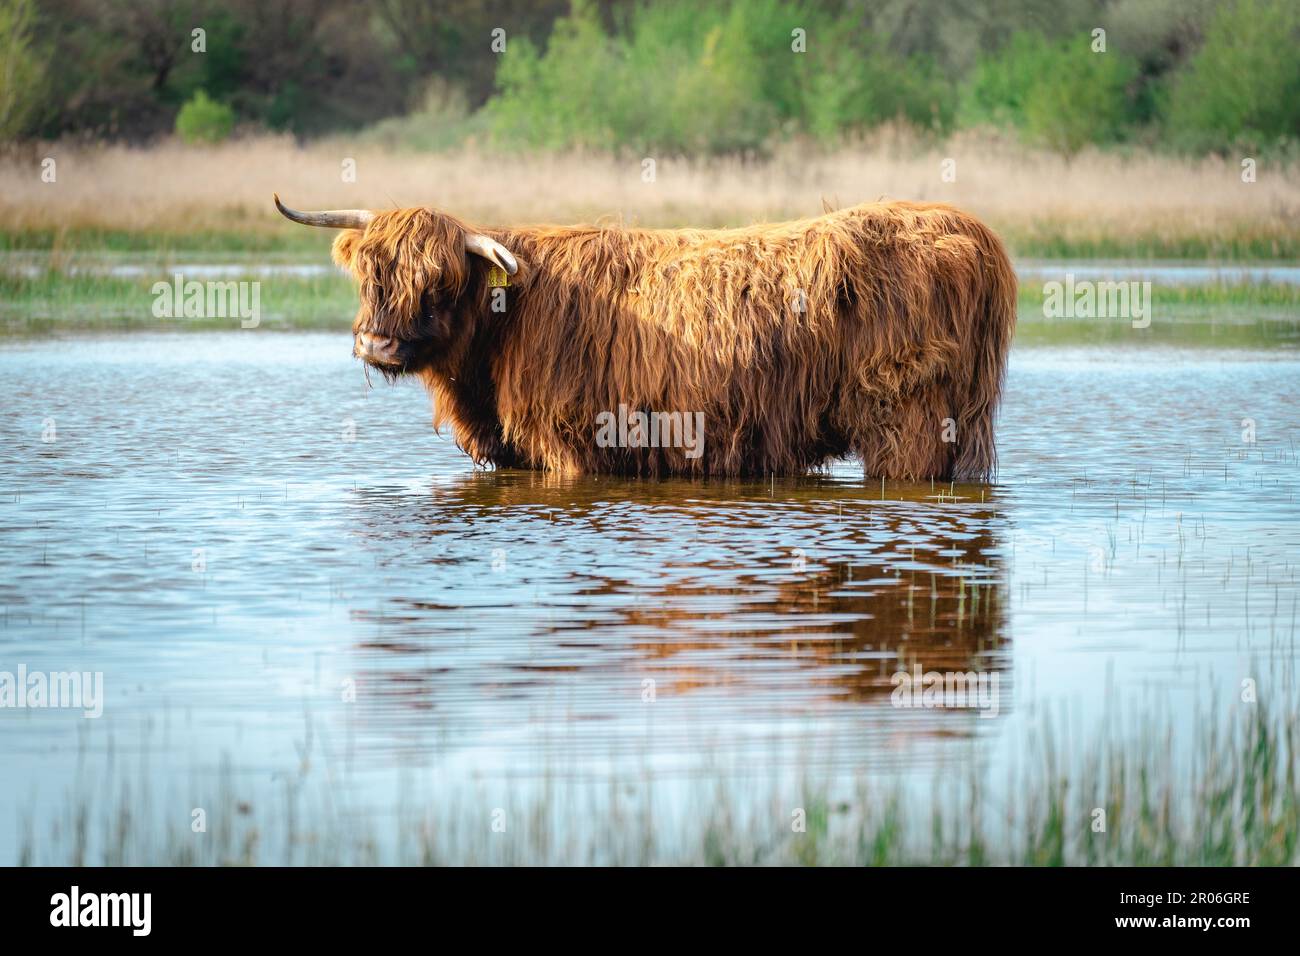 La vache Highlander va nager dans le lac. Wassenaar, pays-Bas. Banque D'Images